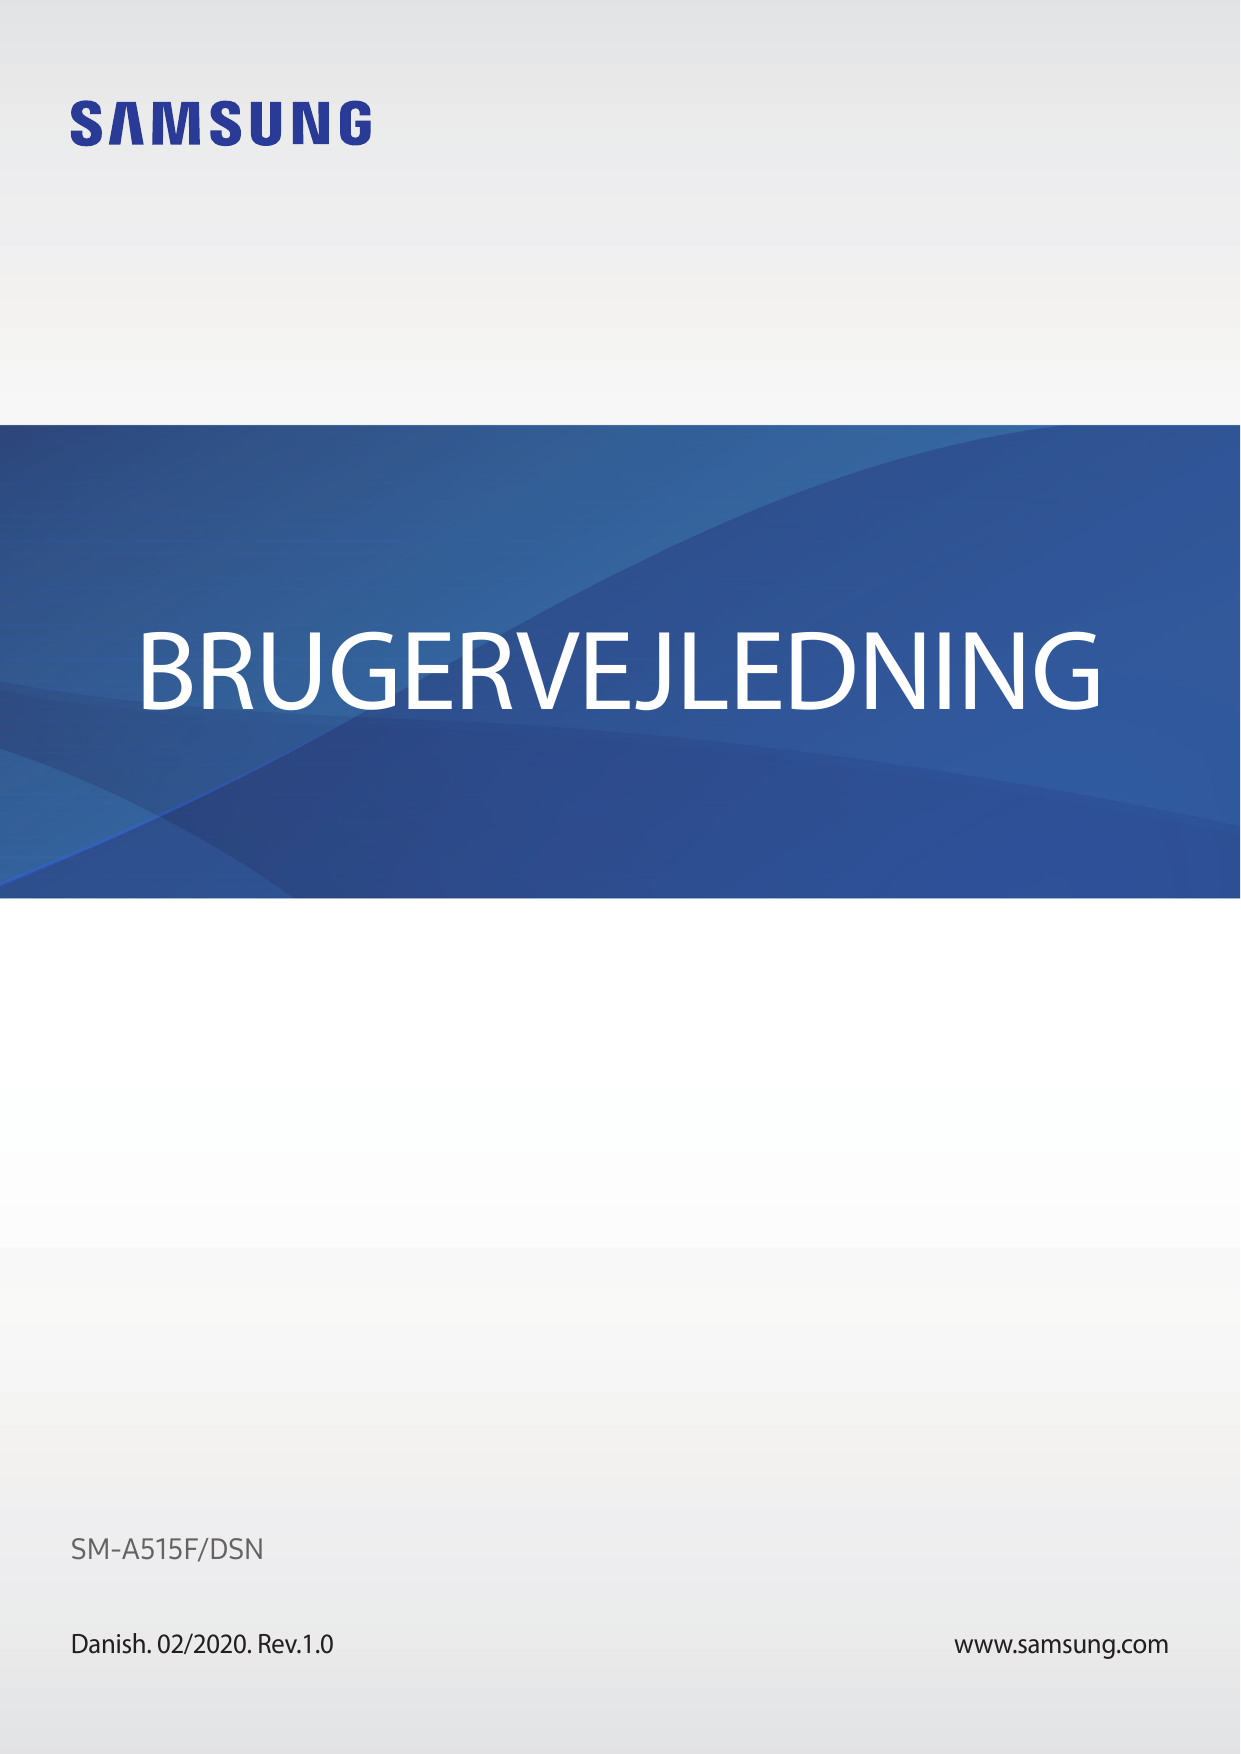 BRUGERVEJLEDNINGSM-A515F/DSNDanish. 02/2020. Rev.1.0www.samsung.com